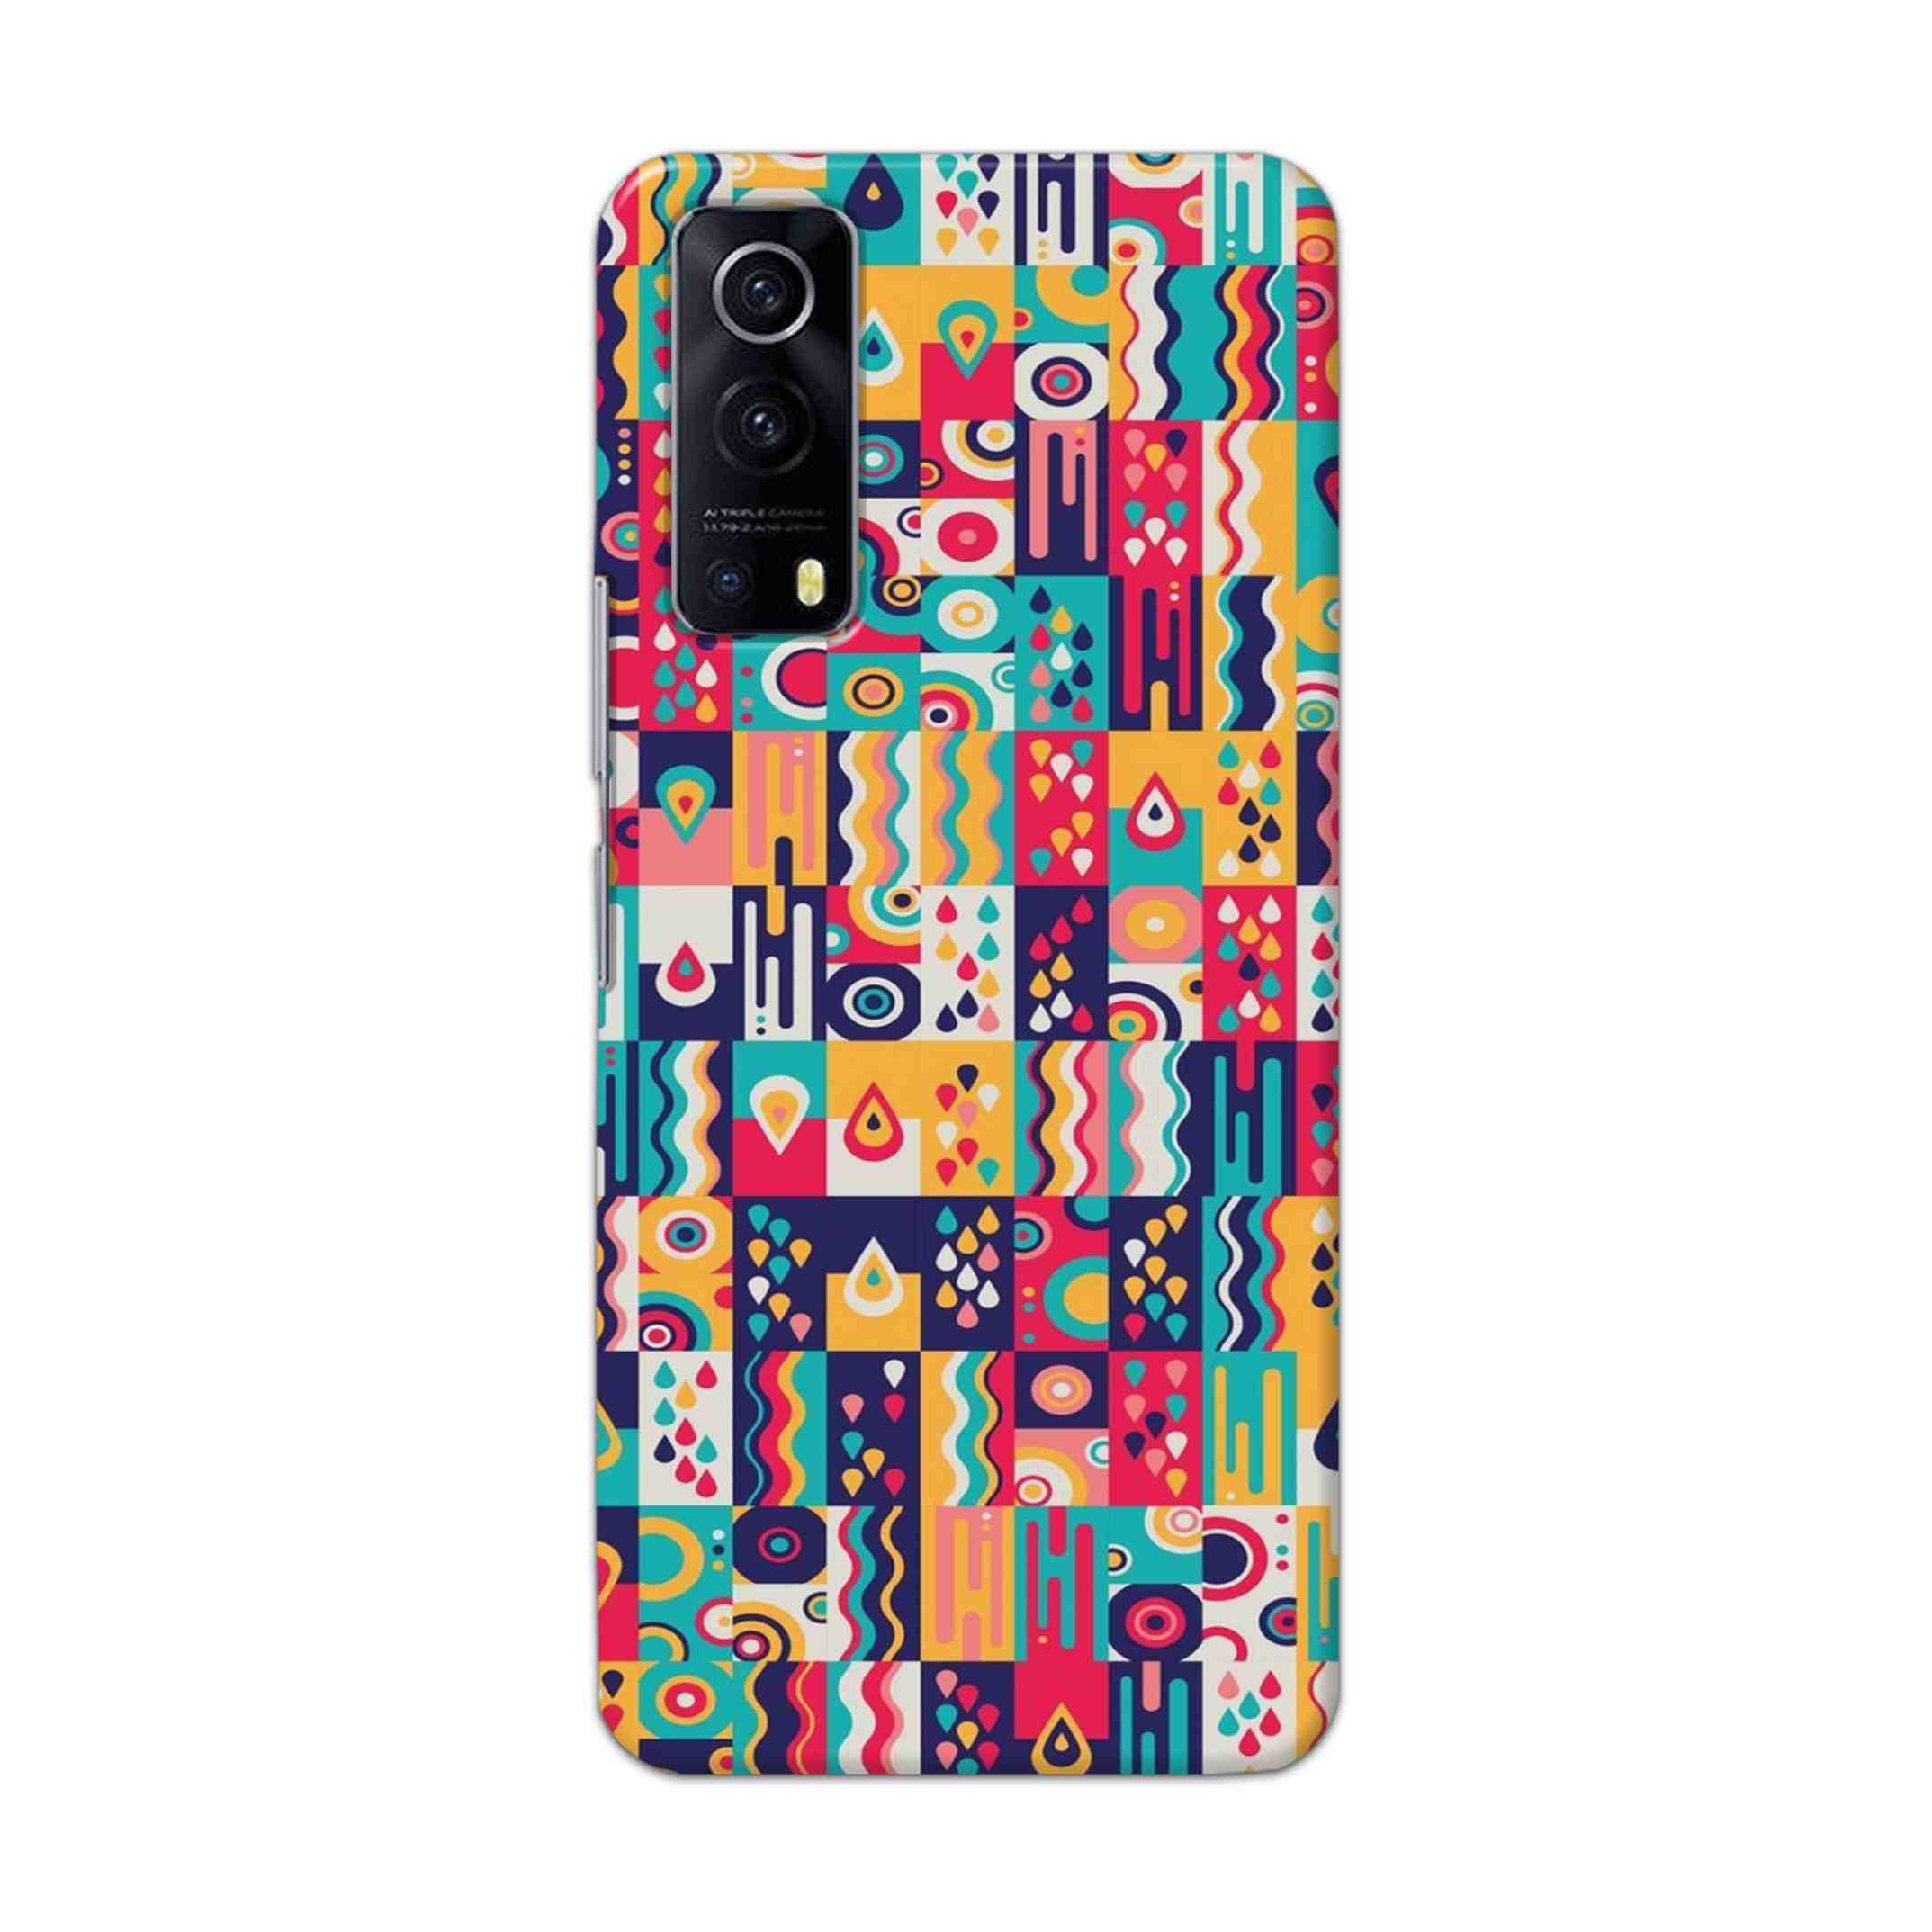 Buy Art Hard Back Mobile Phone Case Cover For Vivo IQOO Z3 Online